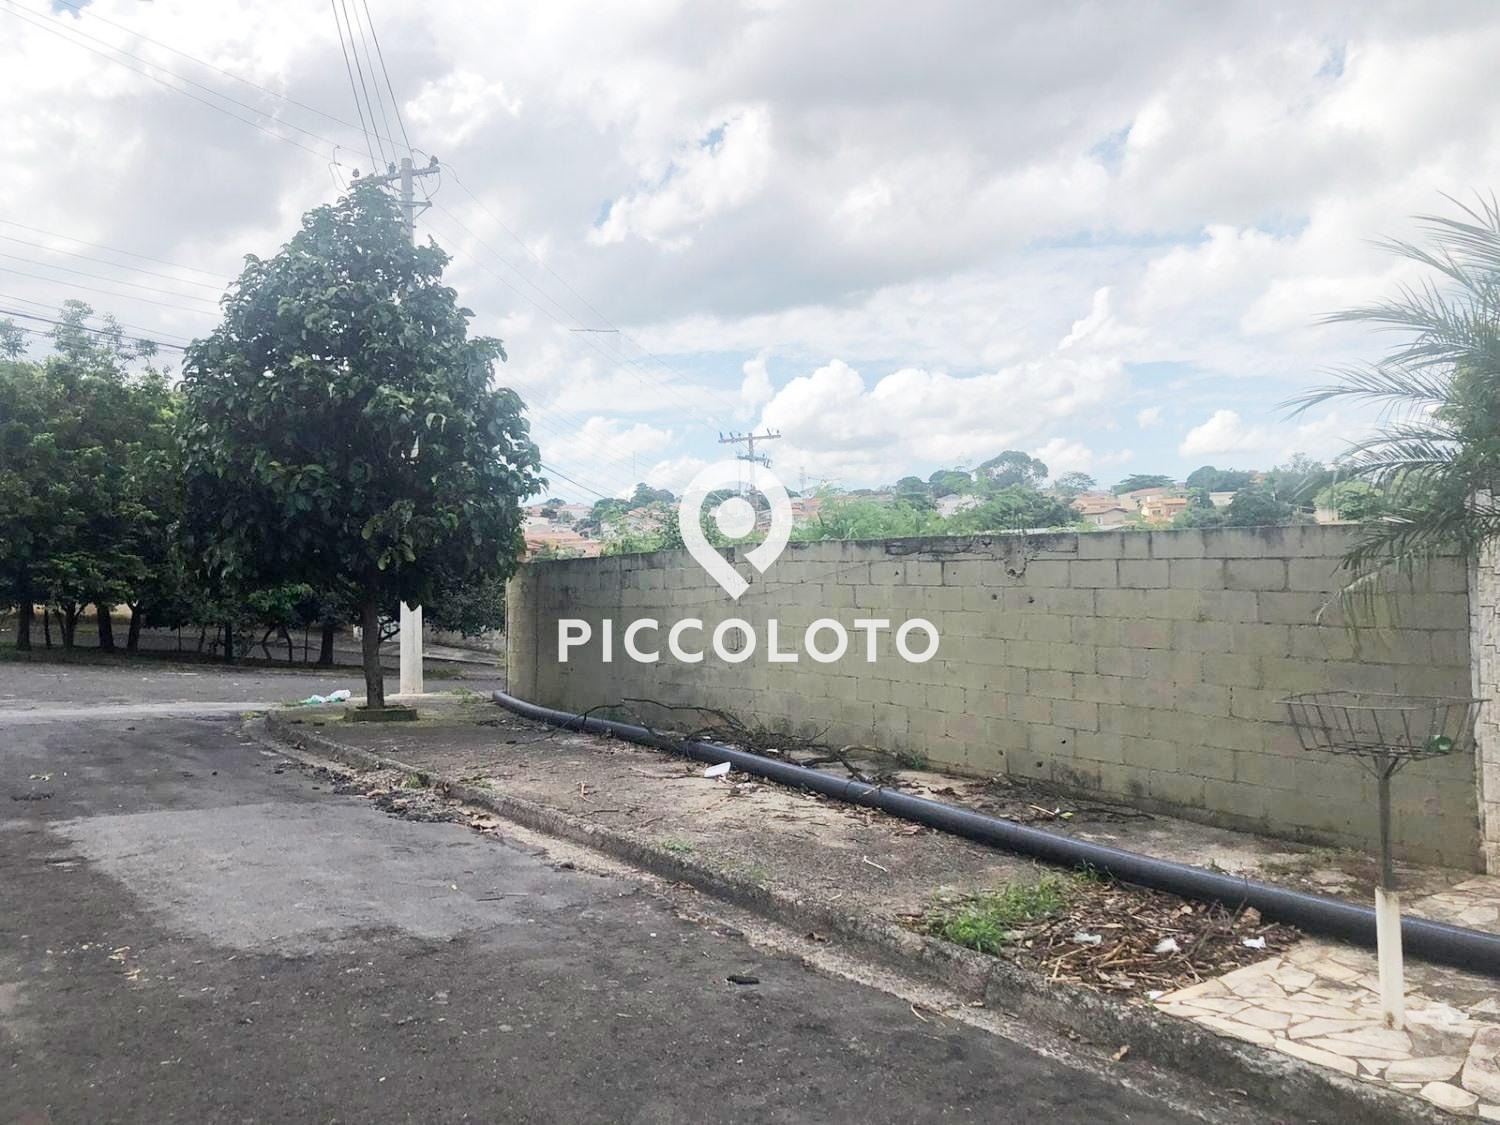 Piccoloto - Terreno à venda no Parque São Quirino em Campinas